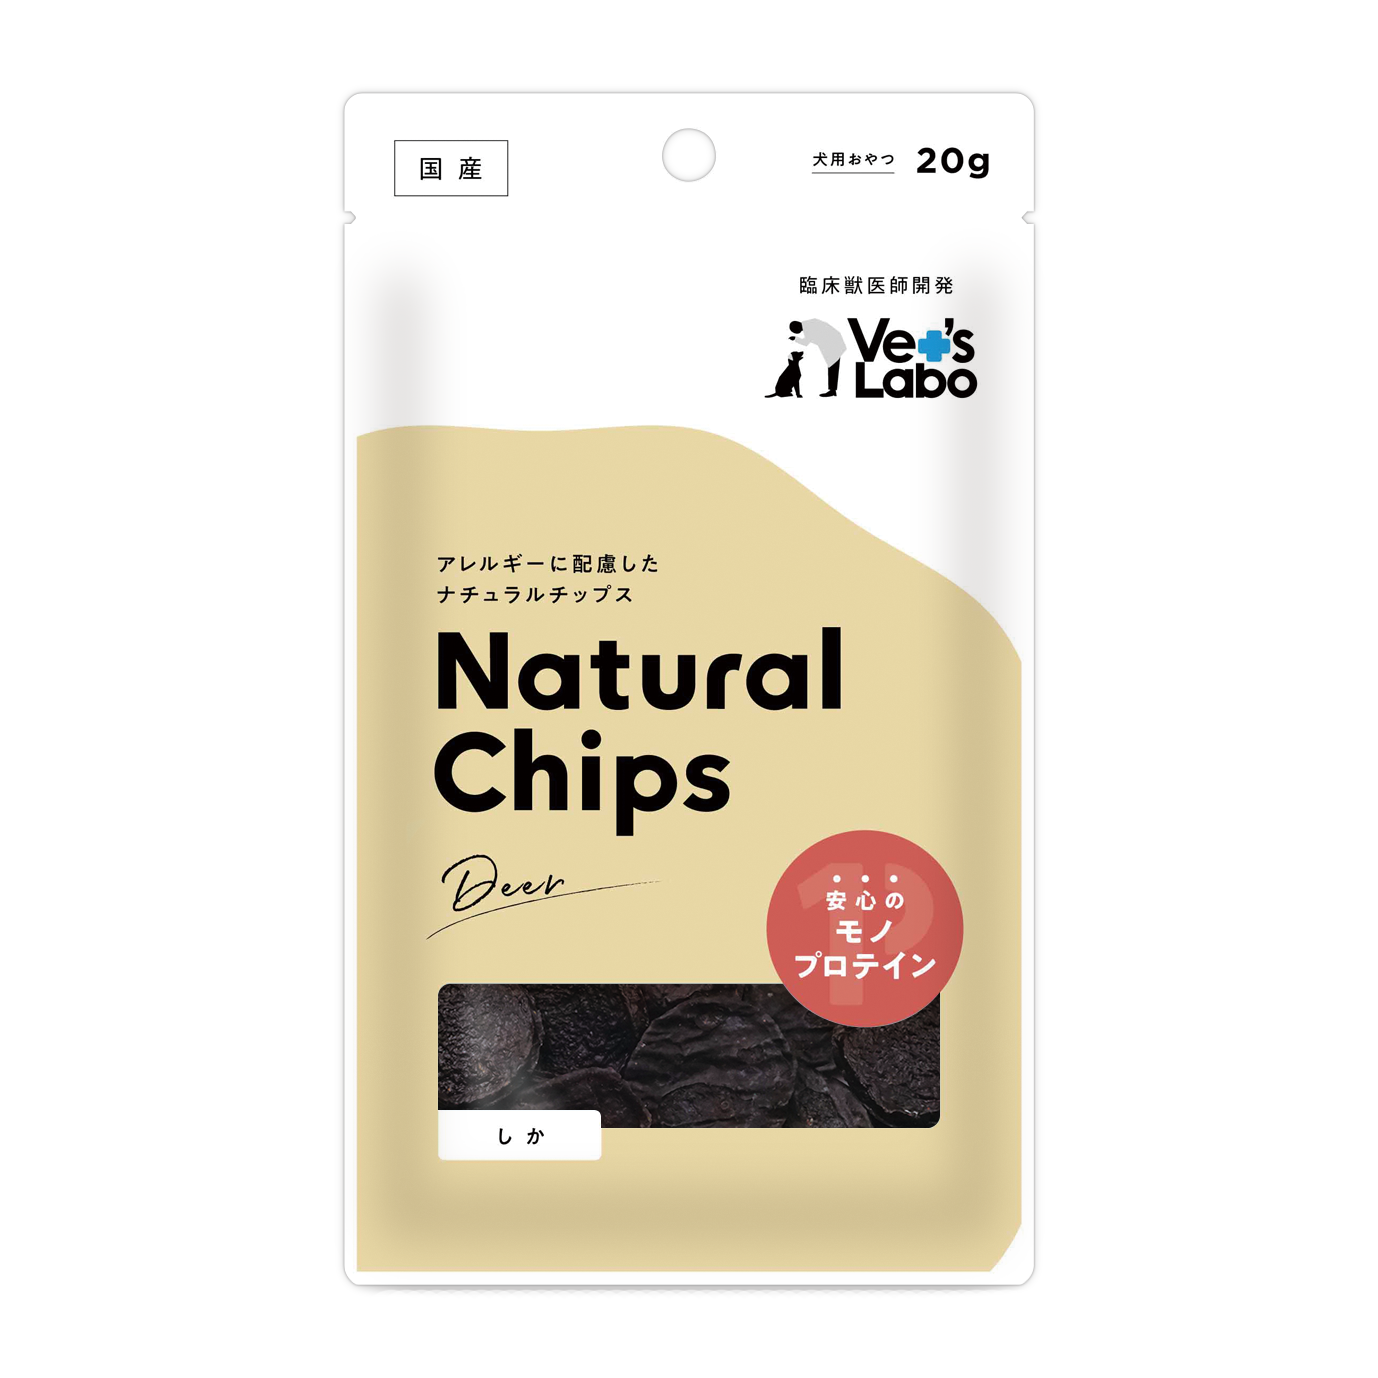 Natural Chips しか